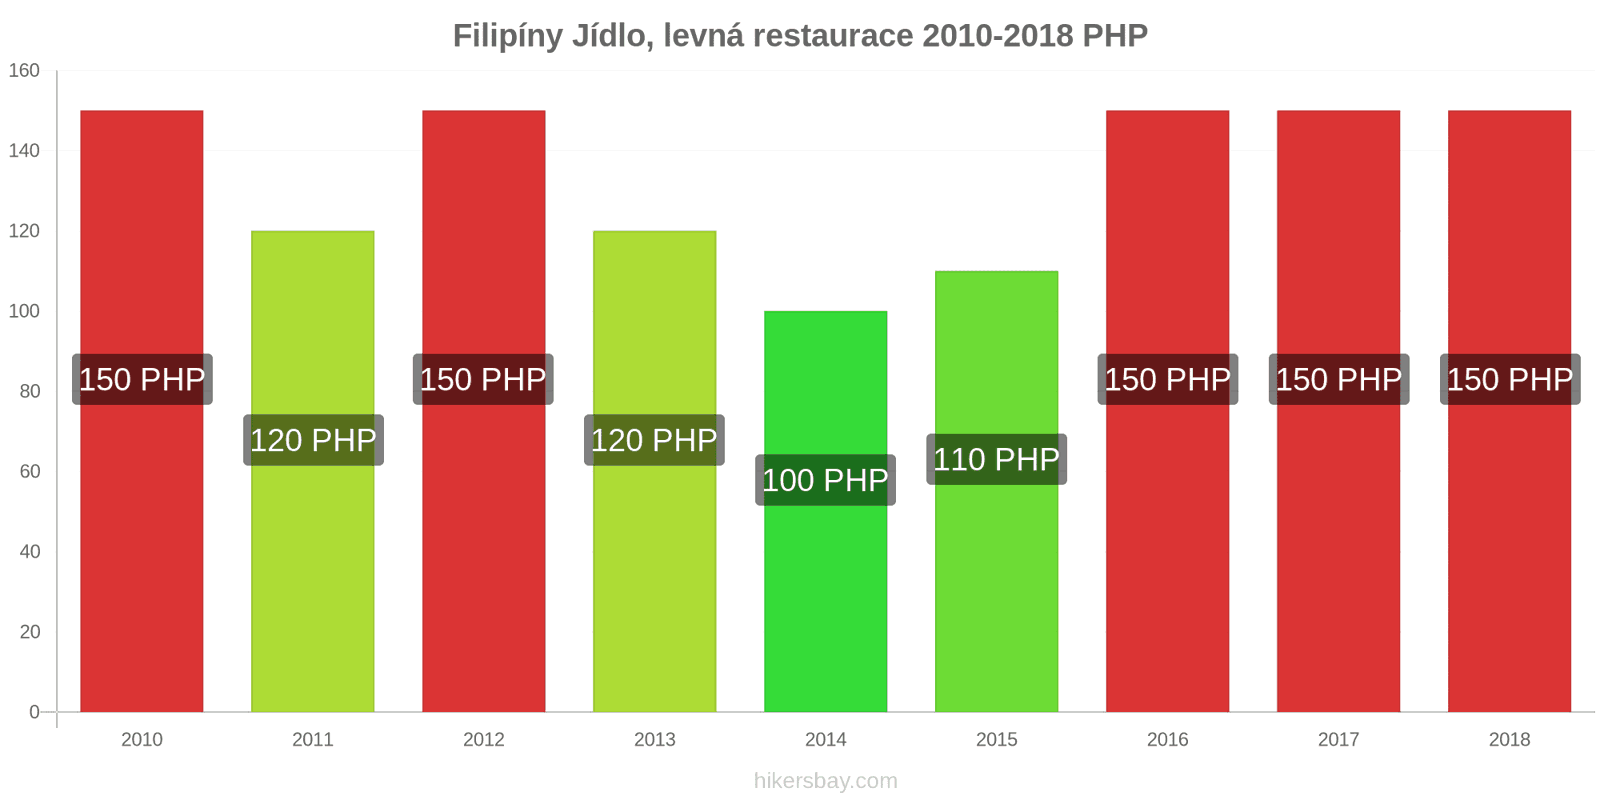 Filipíny změny cen Jídlo v levné restauraci hikersbay.com